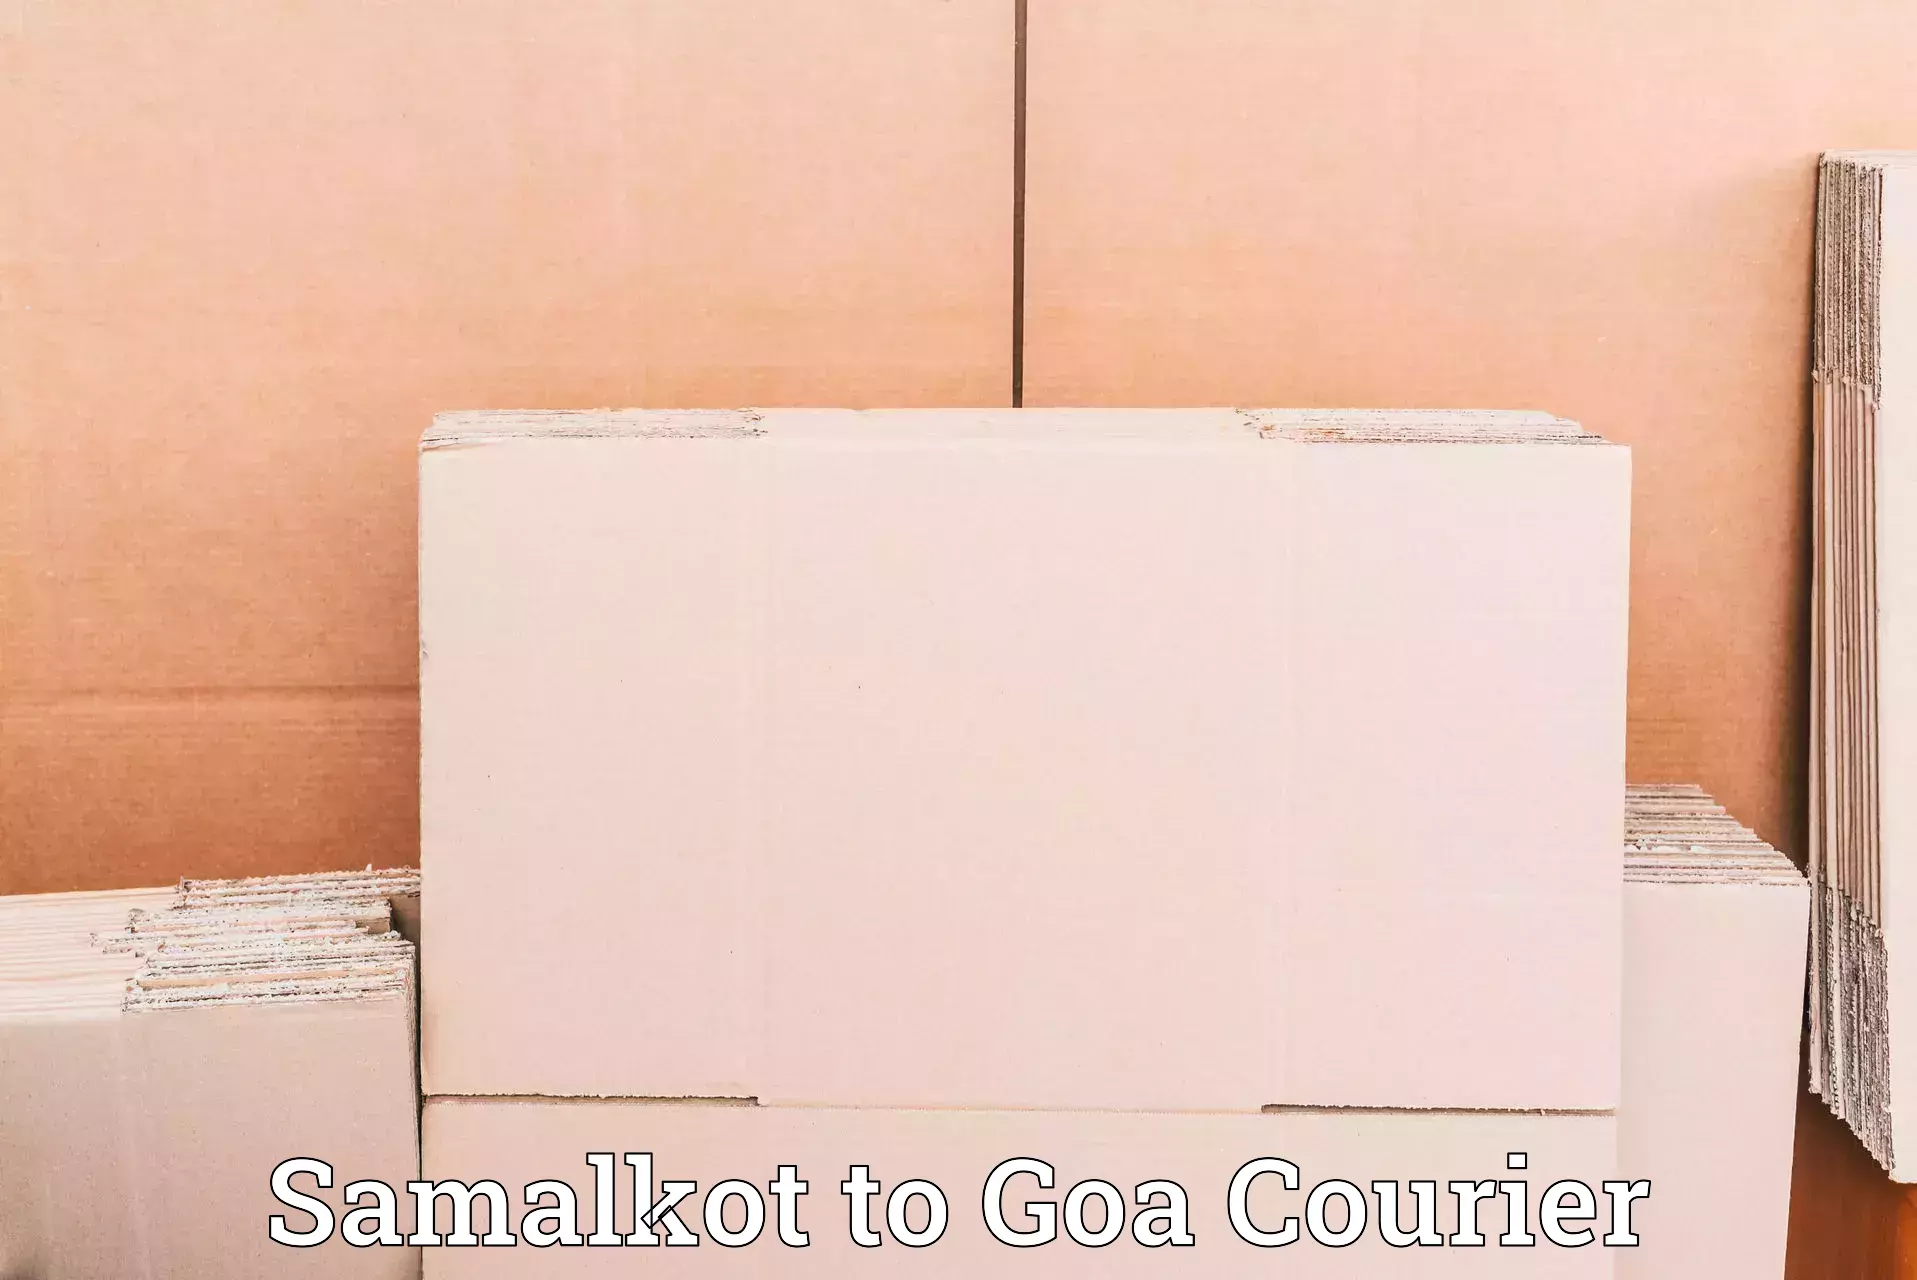 Courier service innovation Samalkot to Goa University